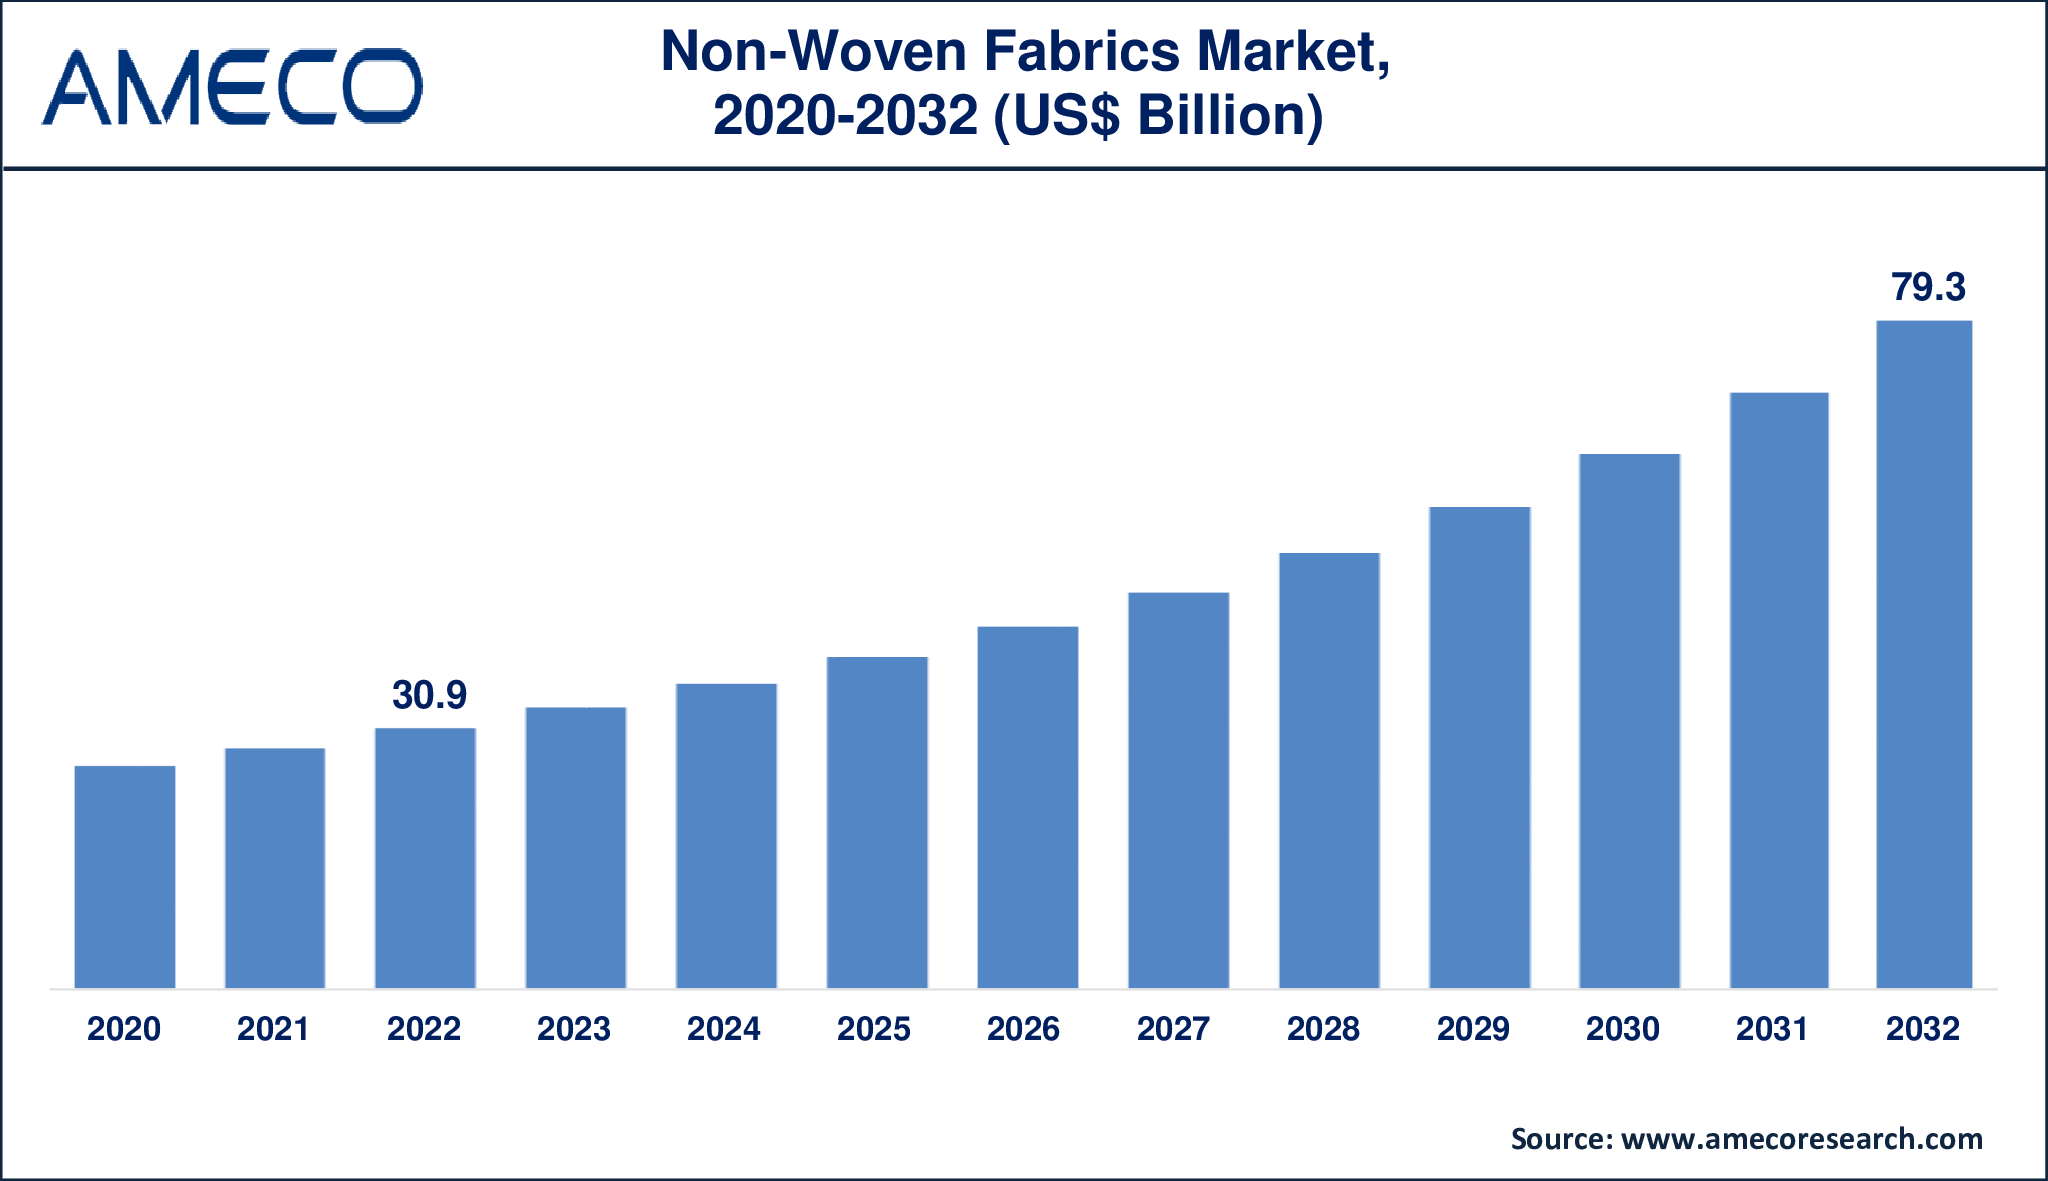 Non-Woven Fabrics Market Dynamics